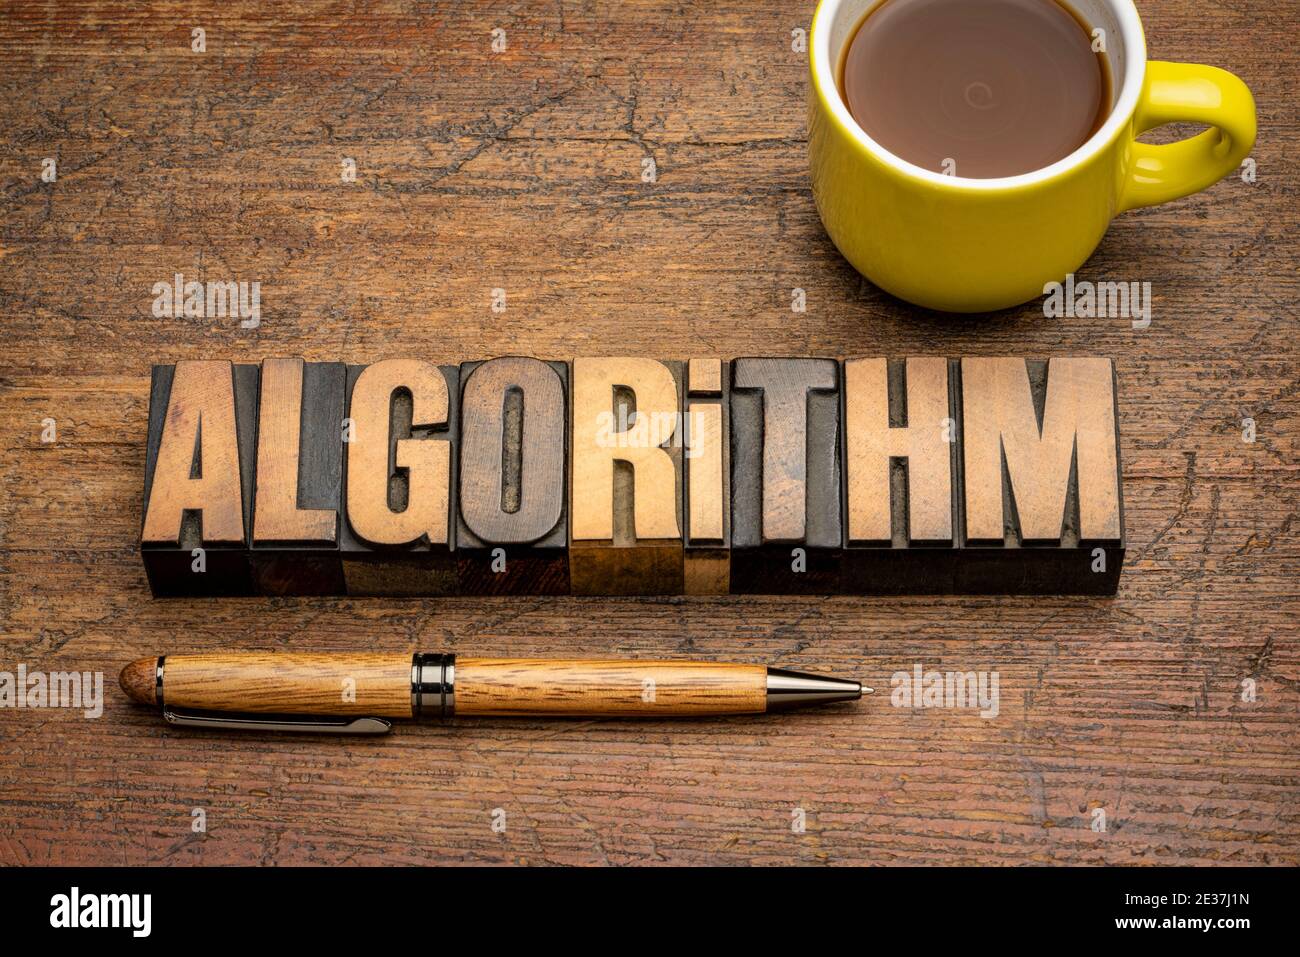 Algorithmus Wort abstrakt in Vintage-Buchdruck Holzart mit einer Tasse Kaffee, ein Verfahren oder eine Reihe von Regeln in Berechnungen oder andere probl befolgt werden Stockfoto